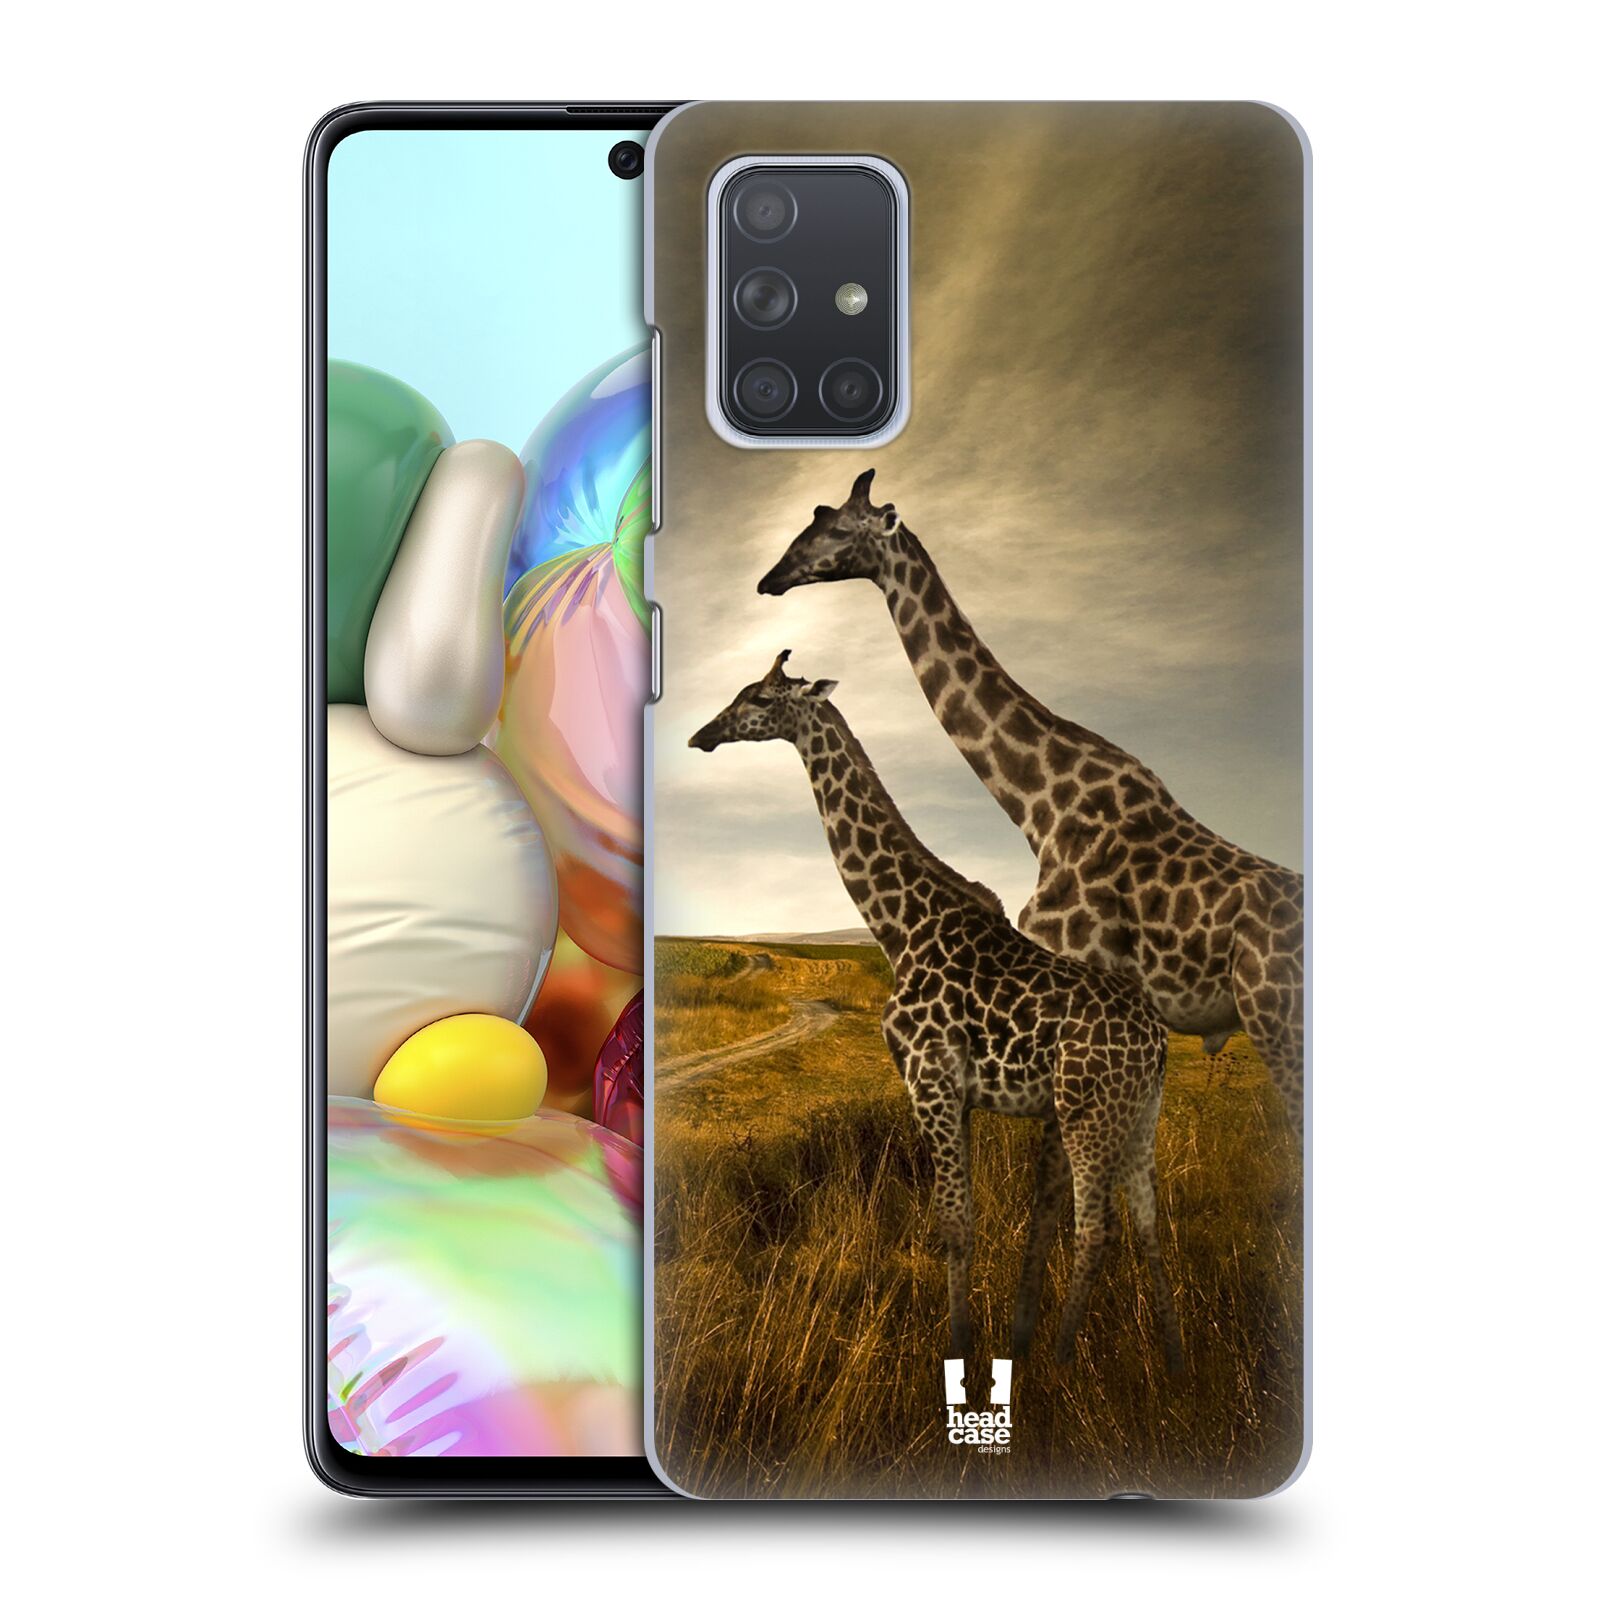 Zadní obal pro mobil Samsung Galaxy A71 - HEAD CASE - Svět zvířat žirafy